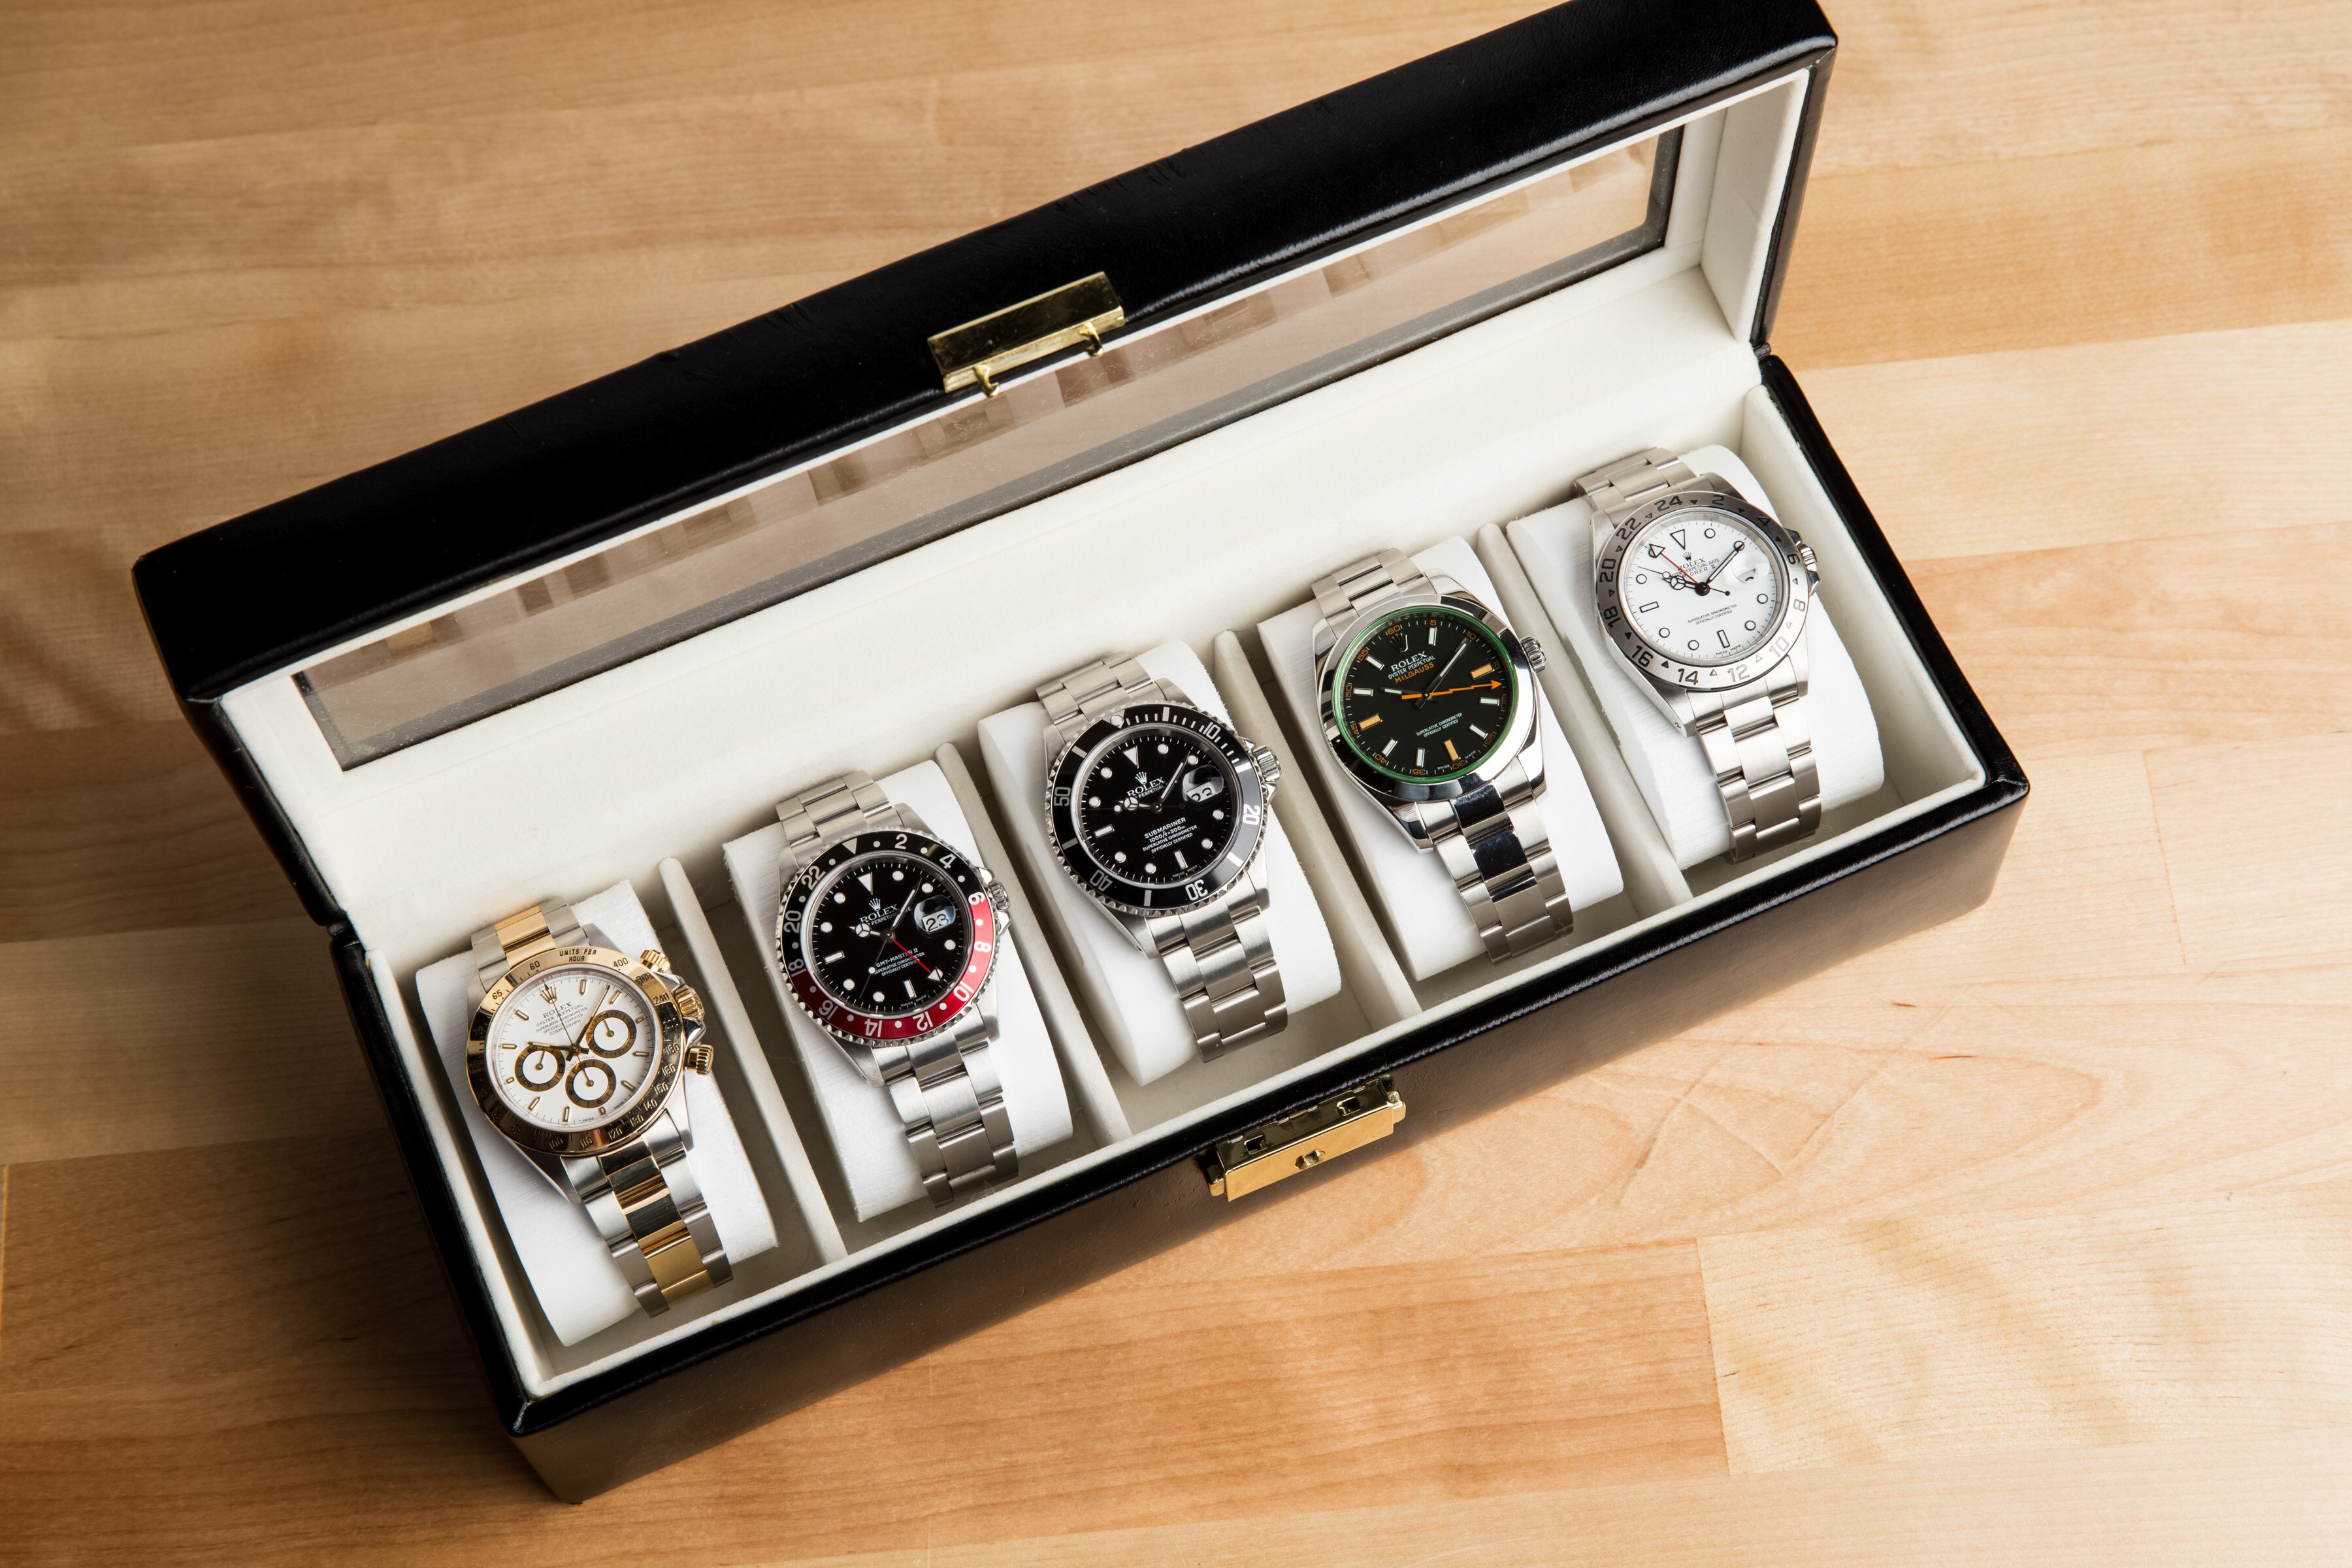 Rolex watch Box. Rolex Unboxing. Часы Маркет модель. Rolex watch hands. Наручные часы маркет